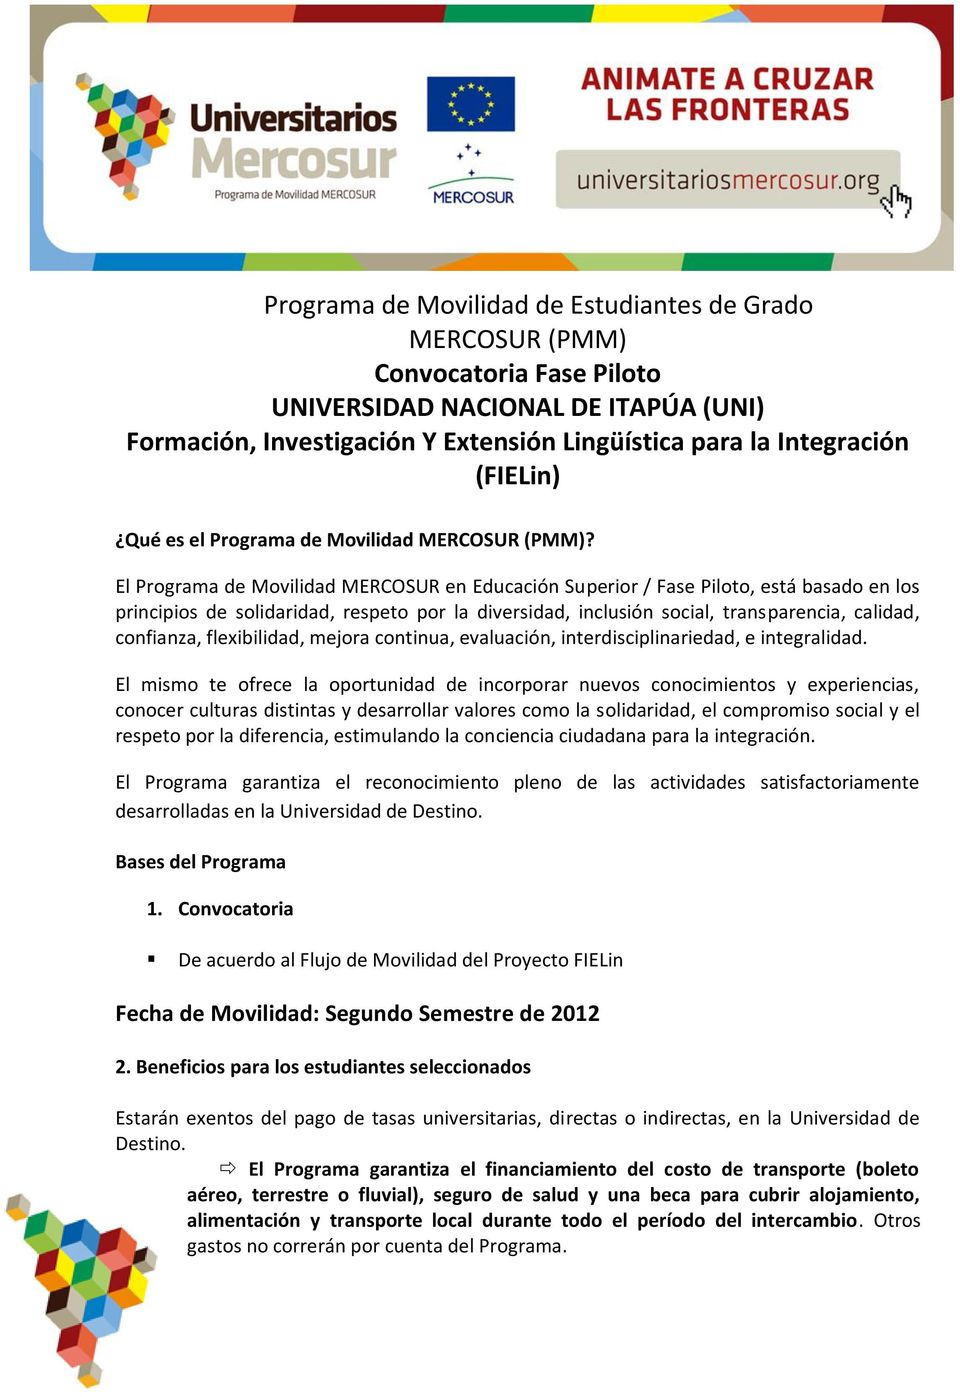 El Programa de Movilidad MERCOSUR en Educación Superior / Fase Piloto, está basado en los principios de solidaridad, respeto por la diversidad, inclusión social, transparencia, calidad, confianza,